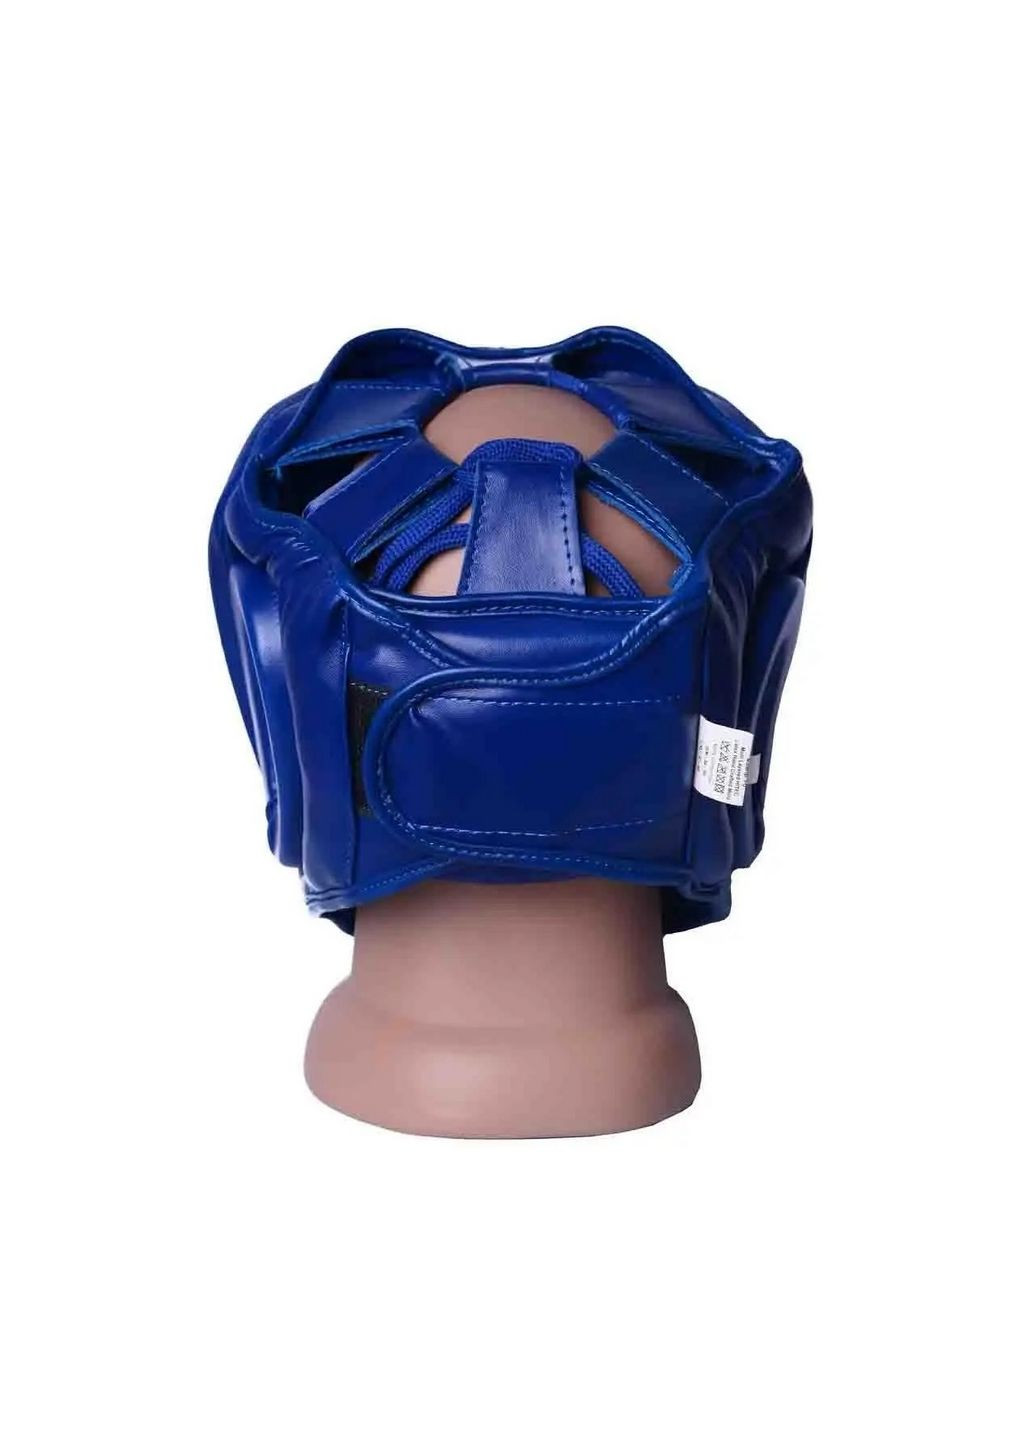 Боксерский шлем 3043 (тренировочный) PowerPlay (293422099)